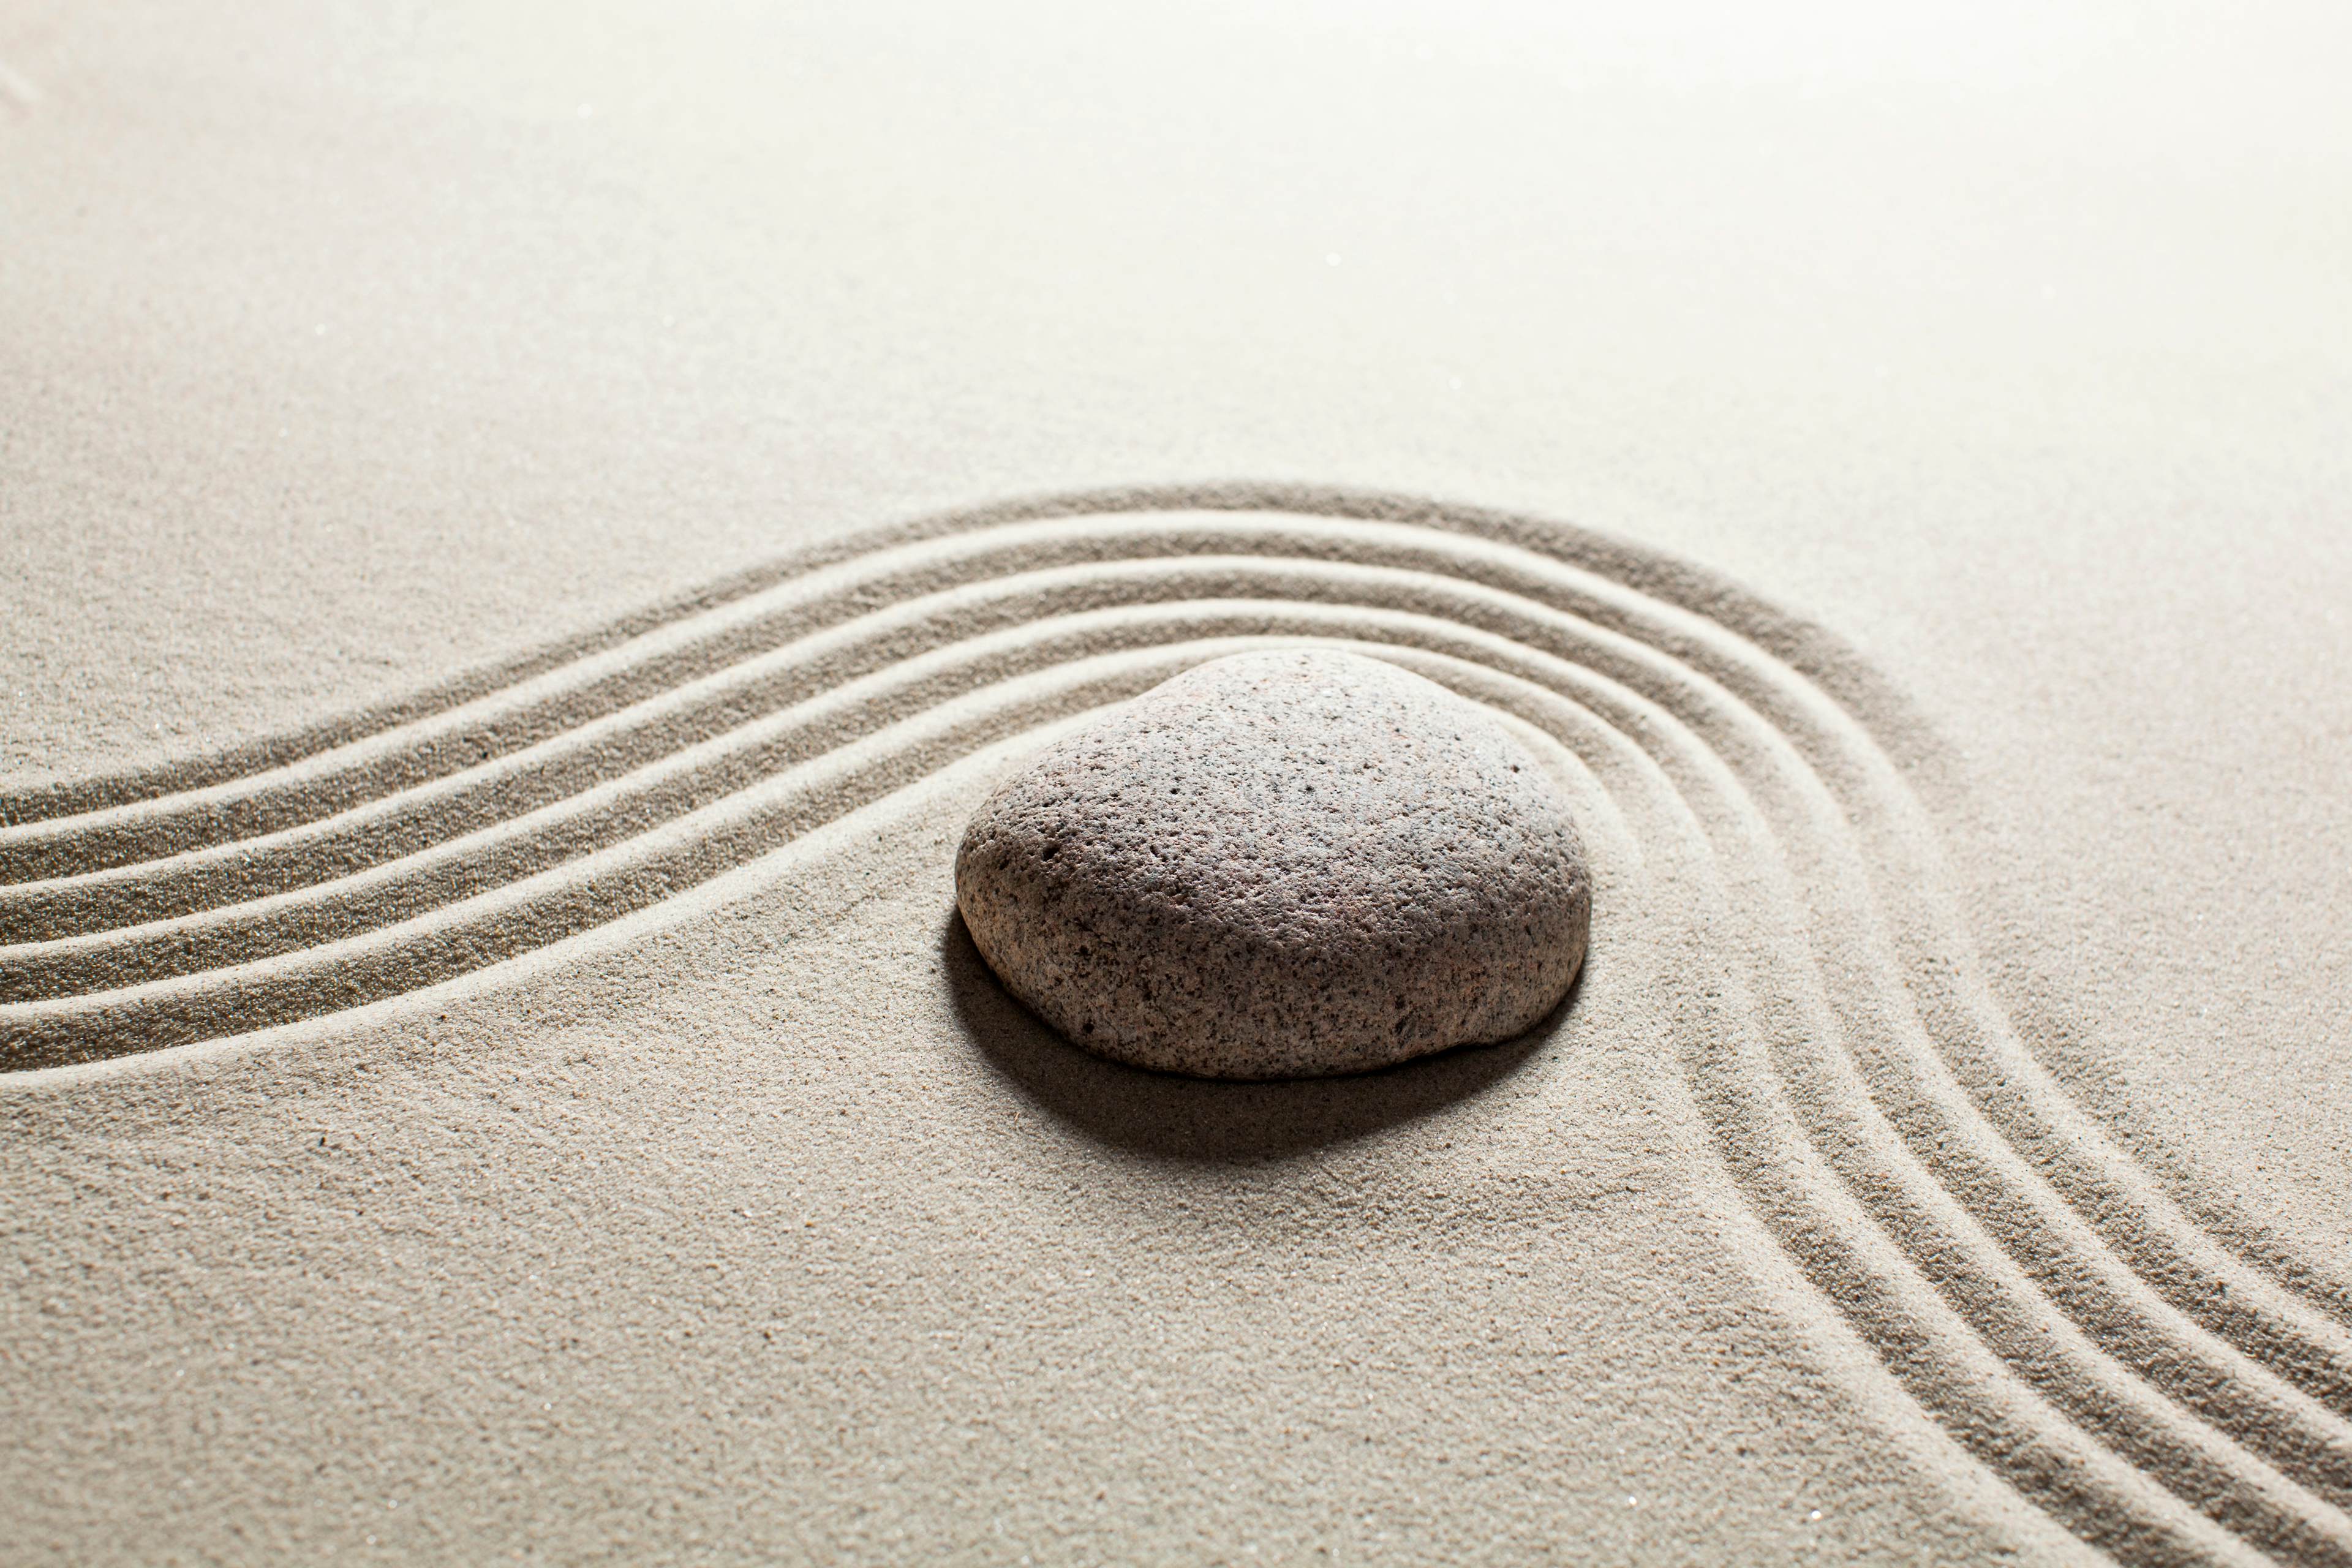 Self® massage wellness Zen white stones